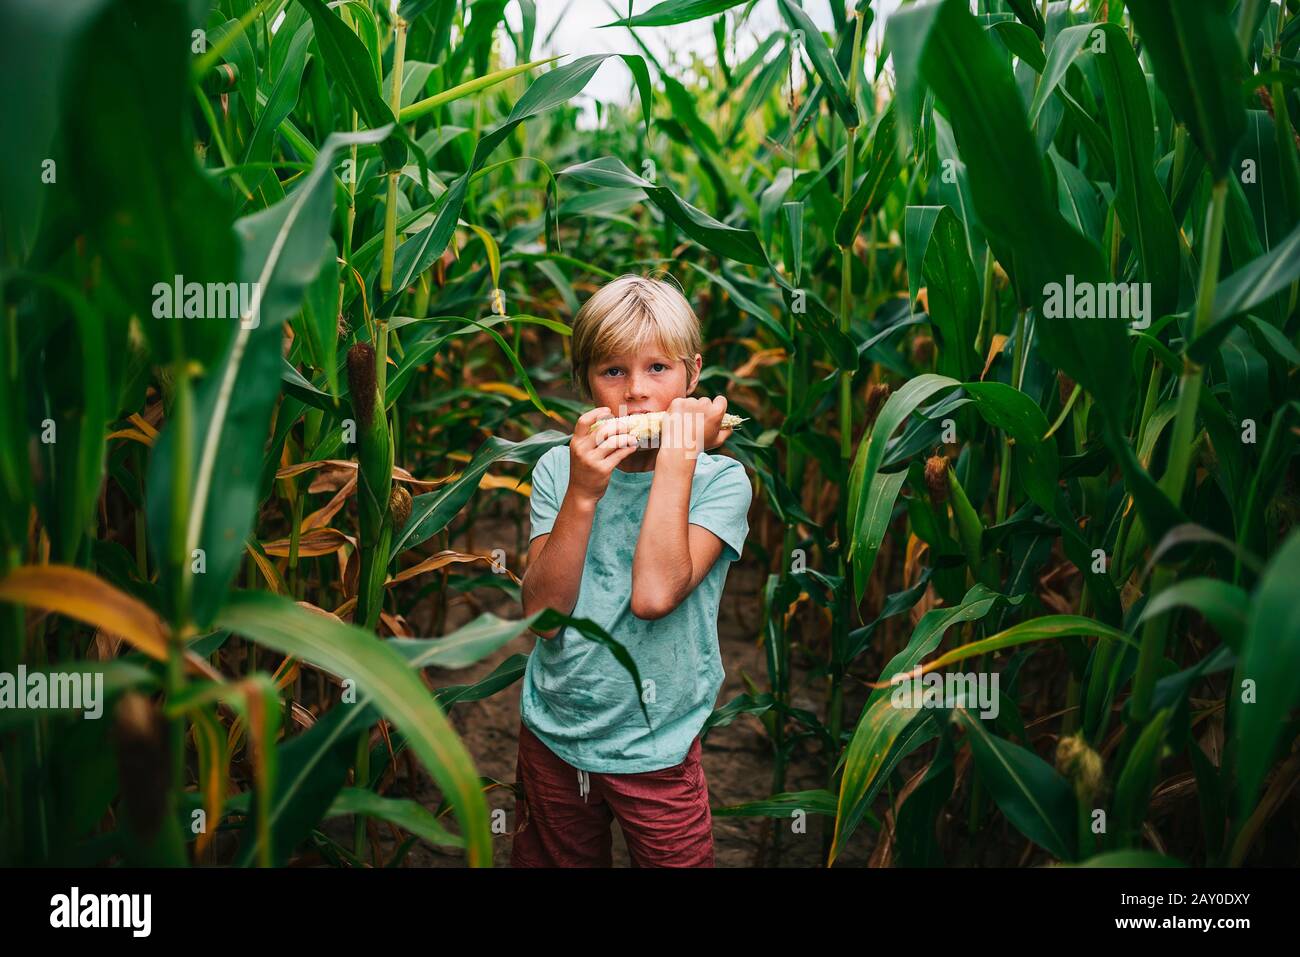 Junge, der auf einem Maisfeld steht und einen Maiskolben isst, USA Stockfoto